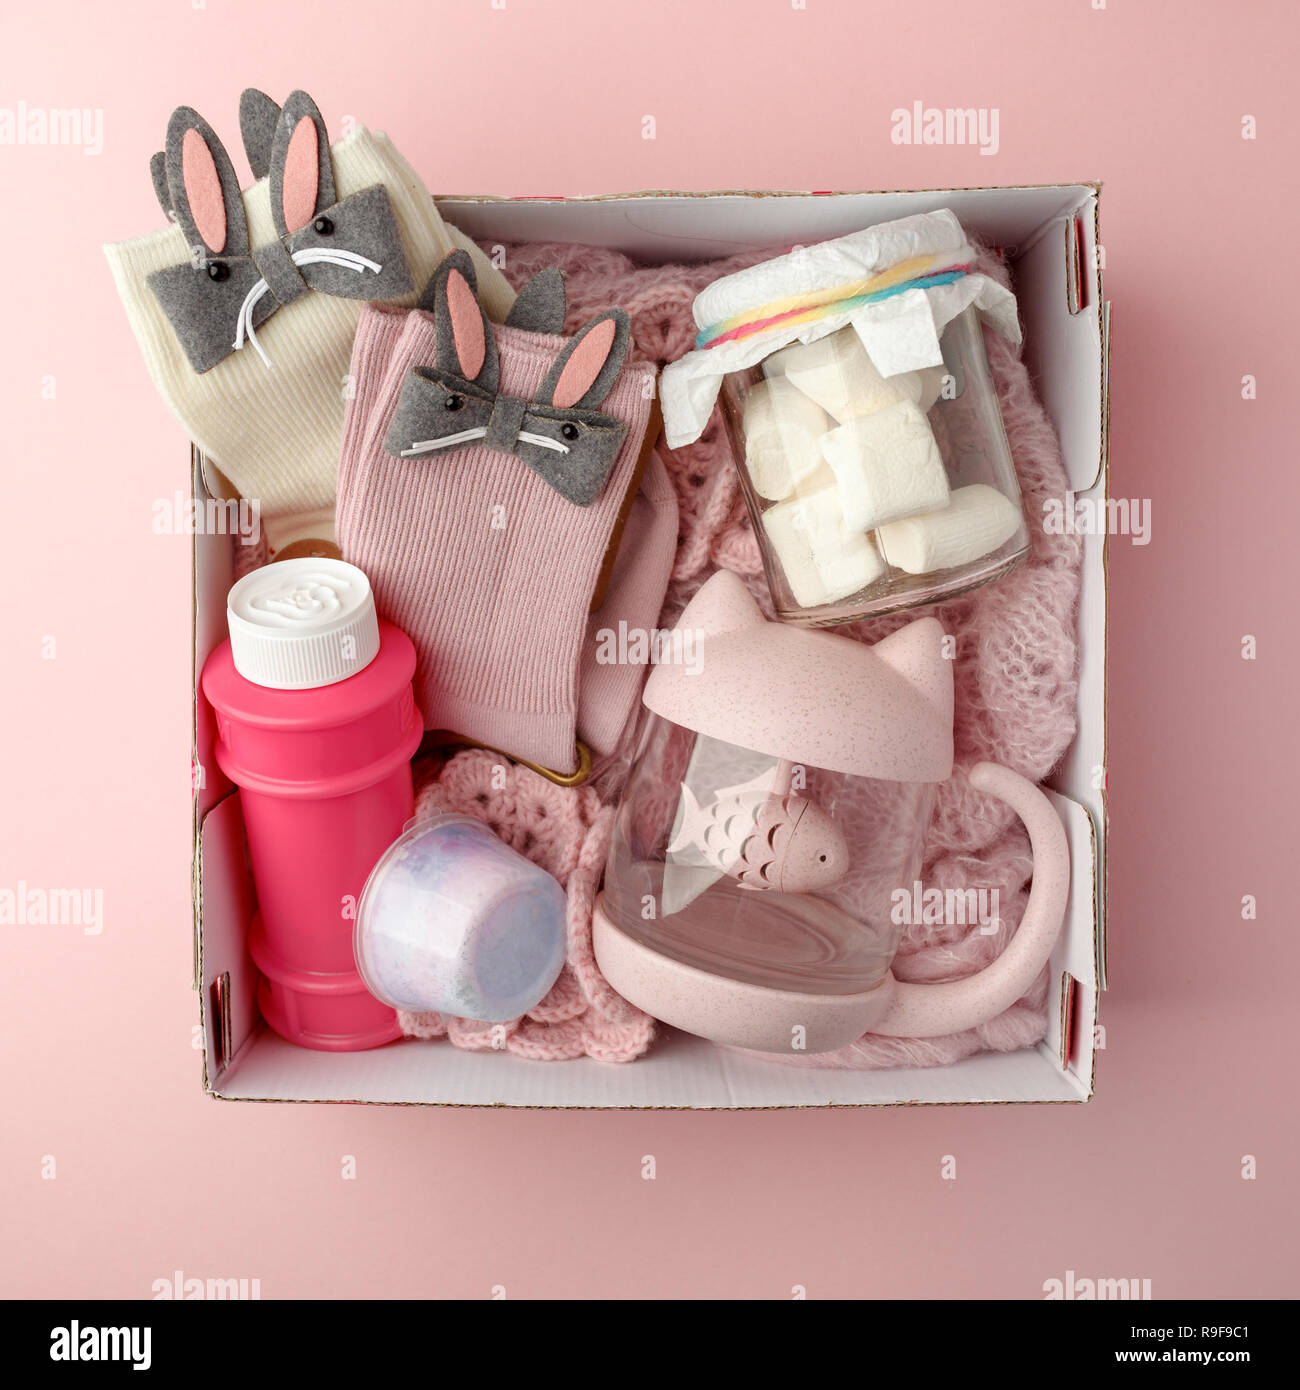 Un box personalizzato con regali per il giorno di San Valentino